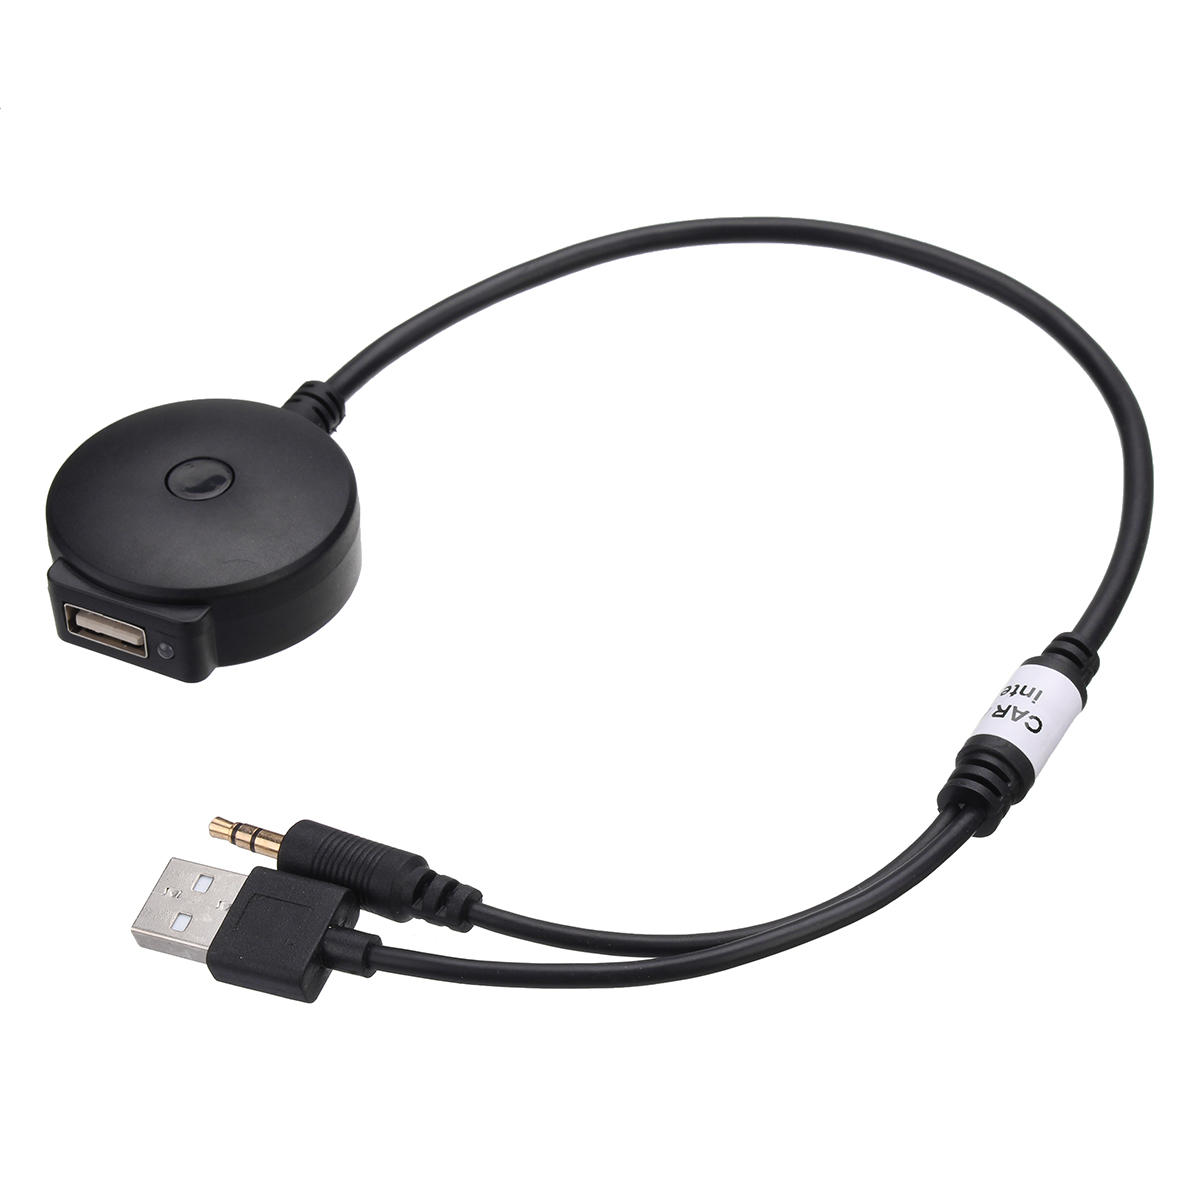 カーBluetoothオーディオ3.5ミリメートルAUX USB音楽アダプタケーブルBMWとミニクーパー用 от Banggood WW